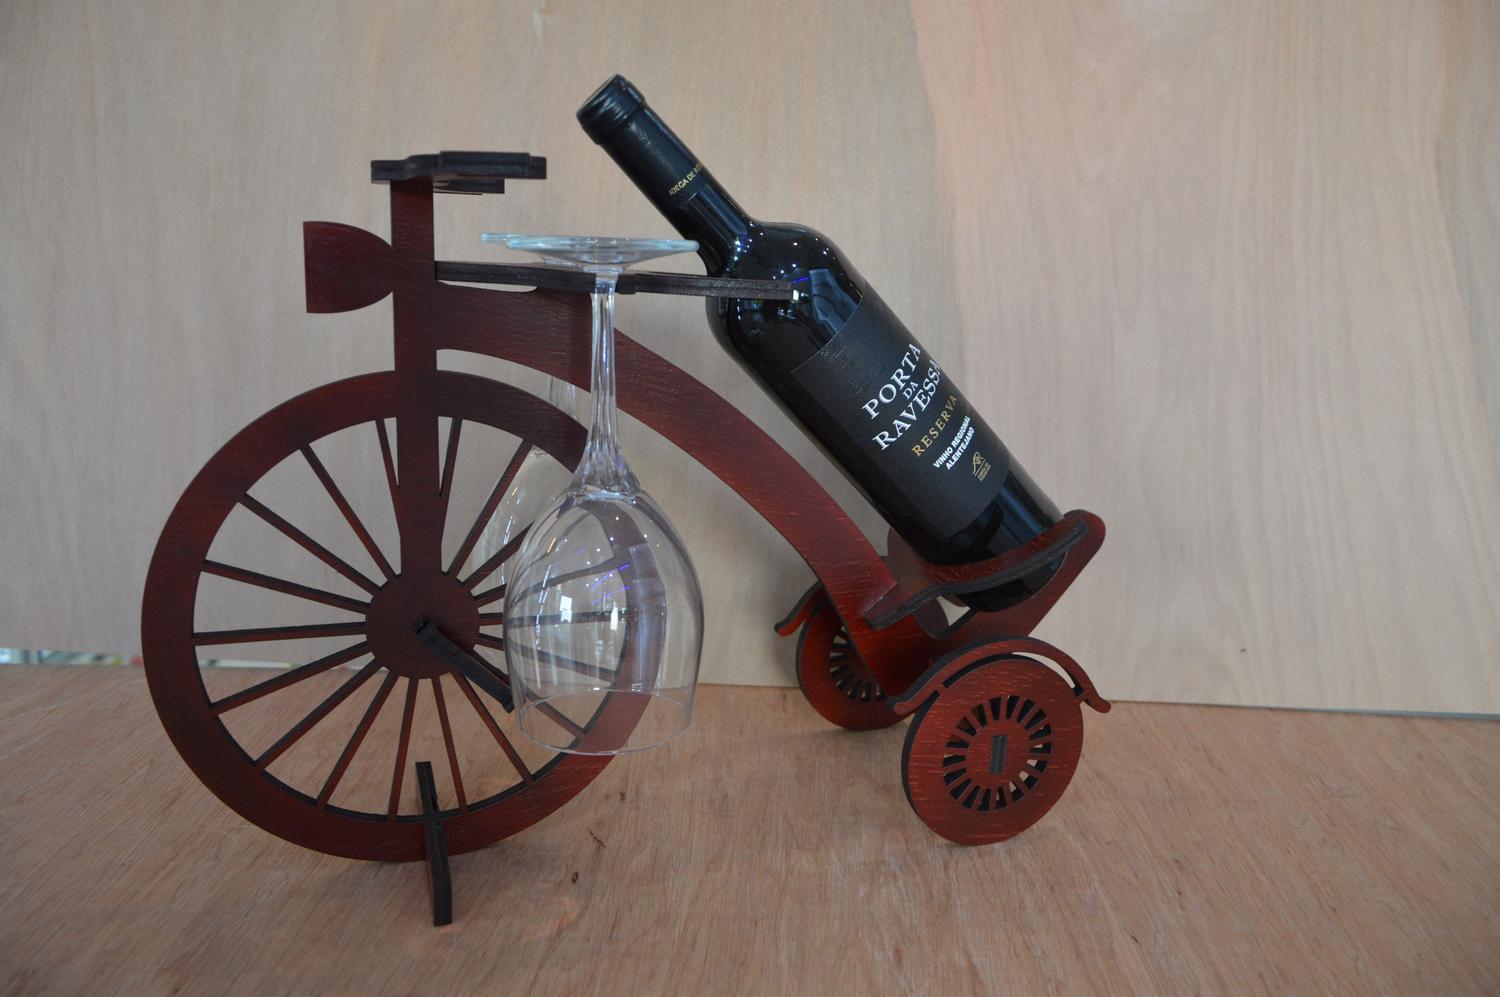 सजावट लकड़ी की साइकिल शराब की बोतल धारक रैक लेजर काटना टेम्पलेट